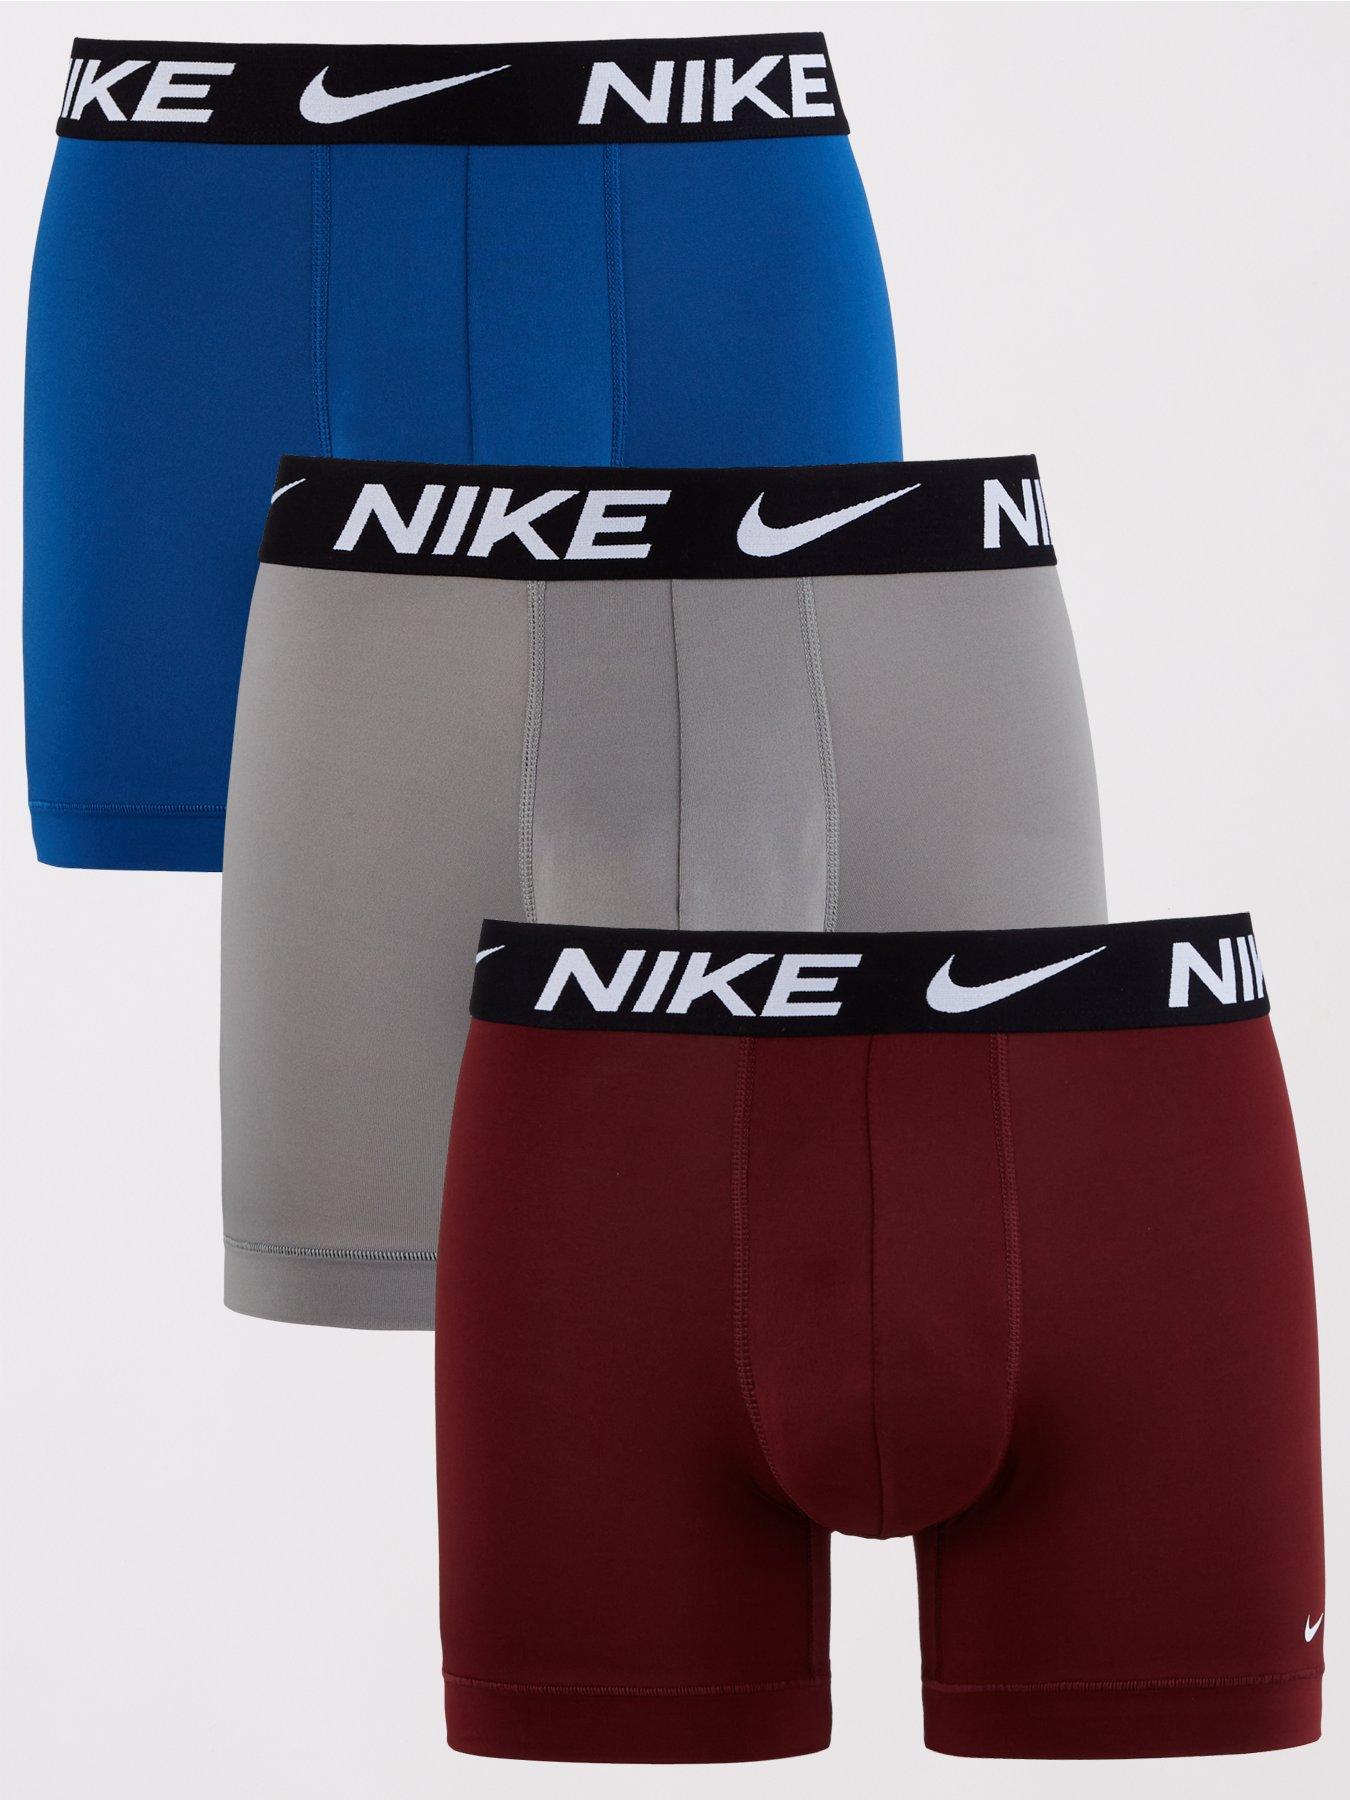 Nike Trunk 3pk - Men's Underwear